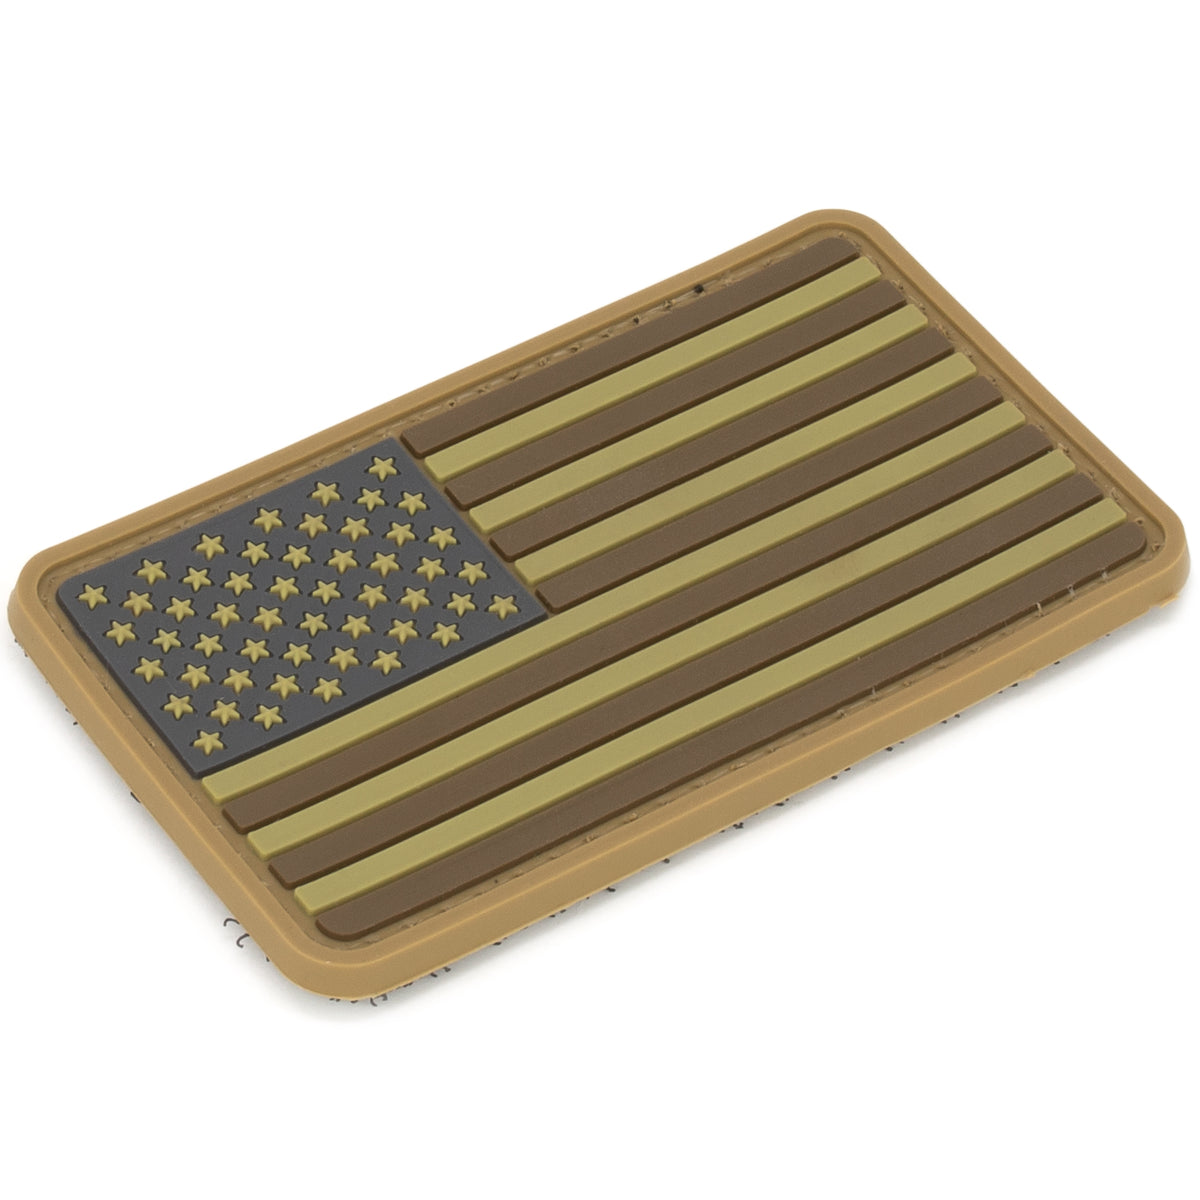 US Flag Patch Desert | Velcro, 2" x 3.25"